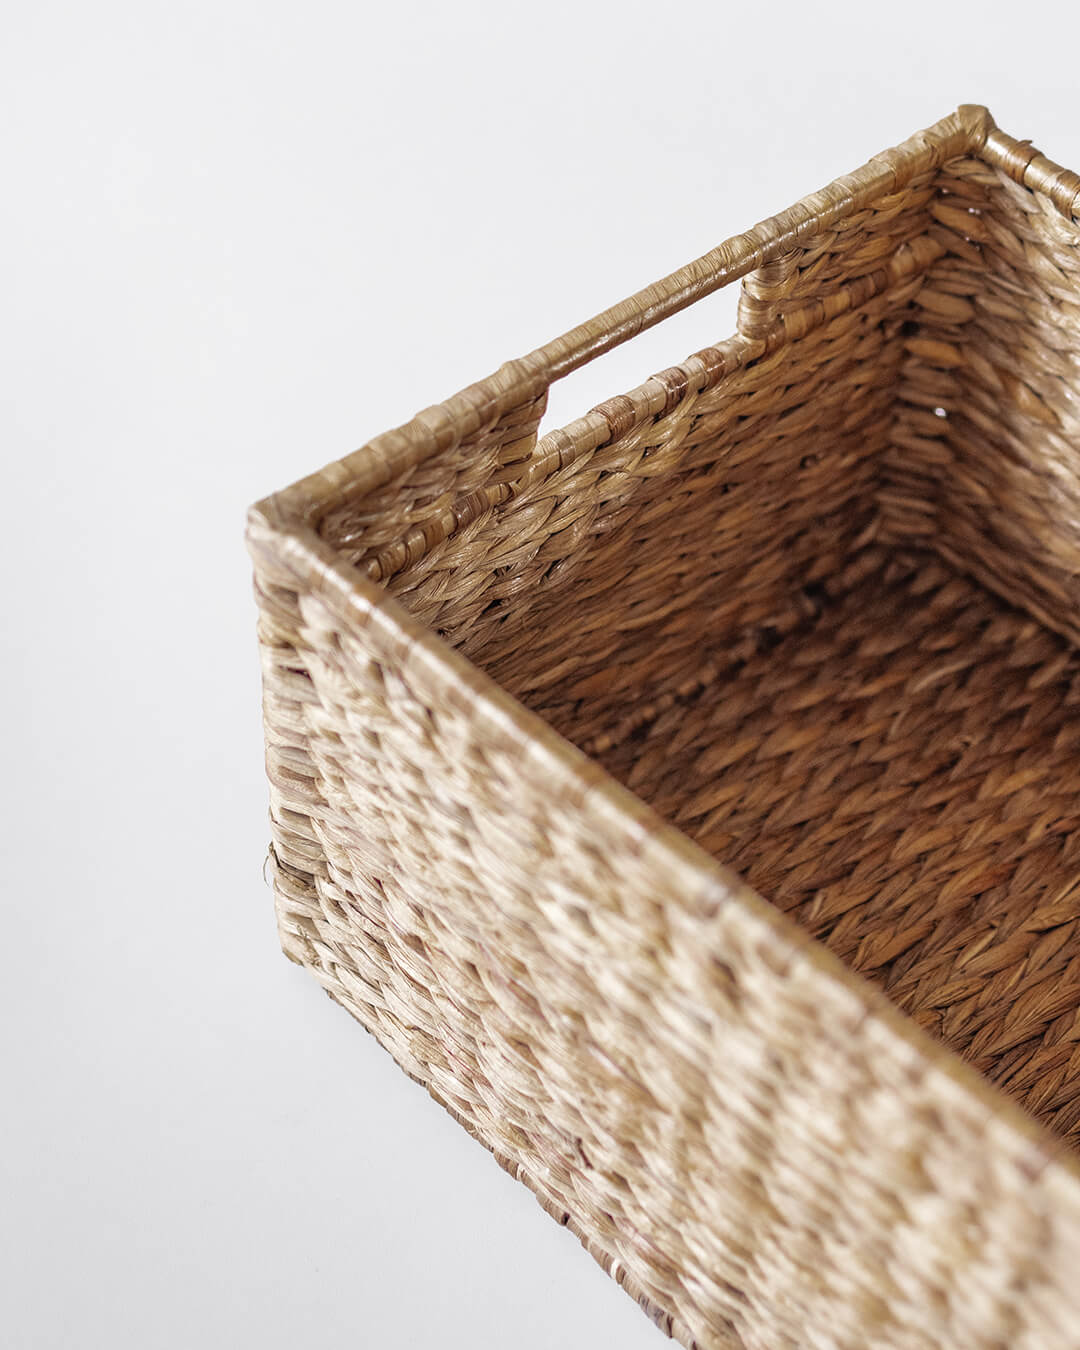 Buy wicker baskets online